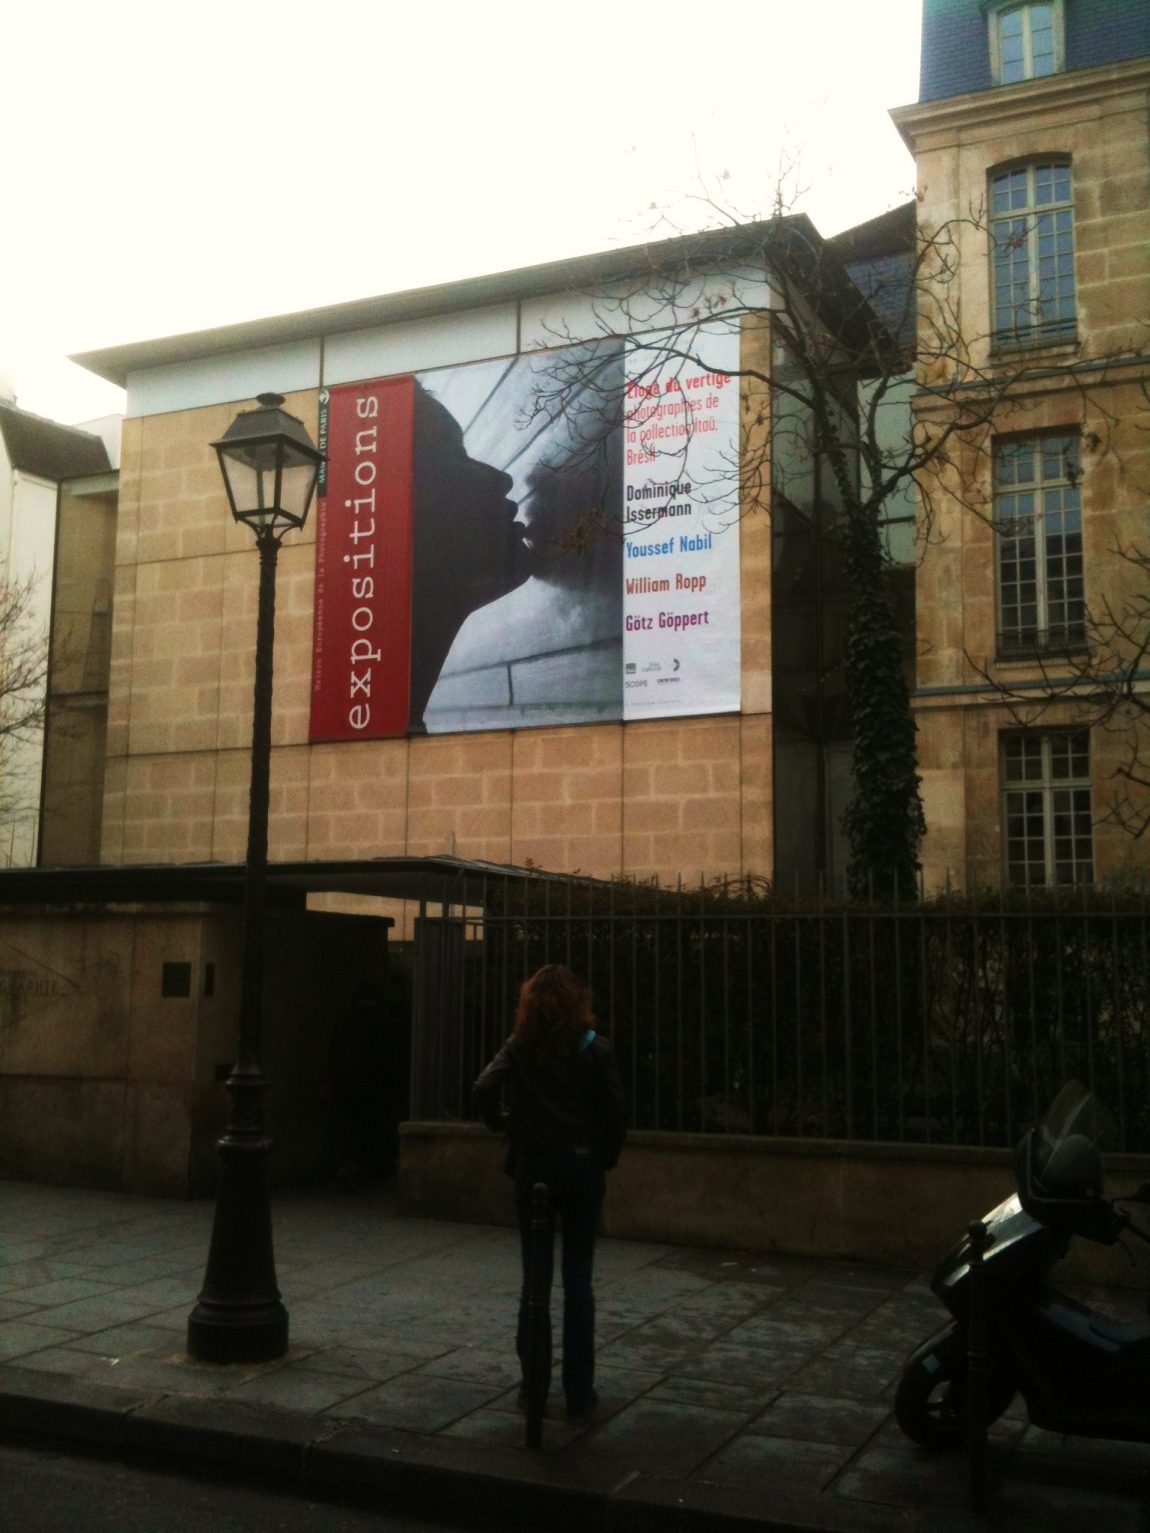 Maison Européenne de la Photographie Paris façade 2 2018010522 5a4ffeead538a